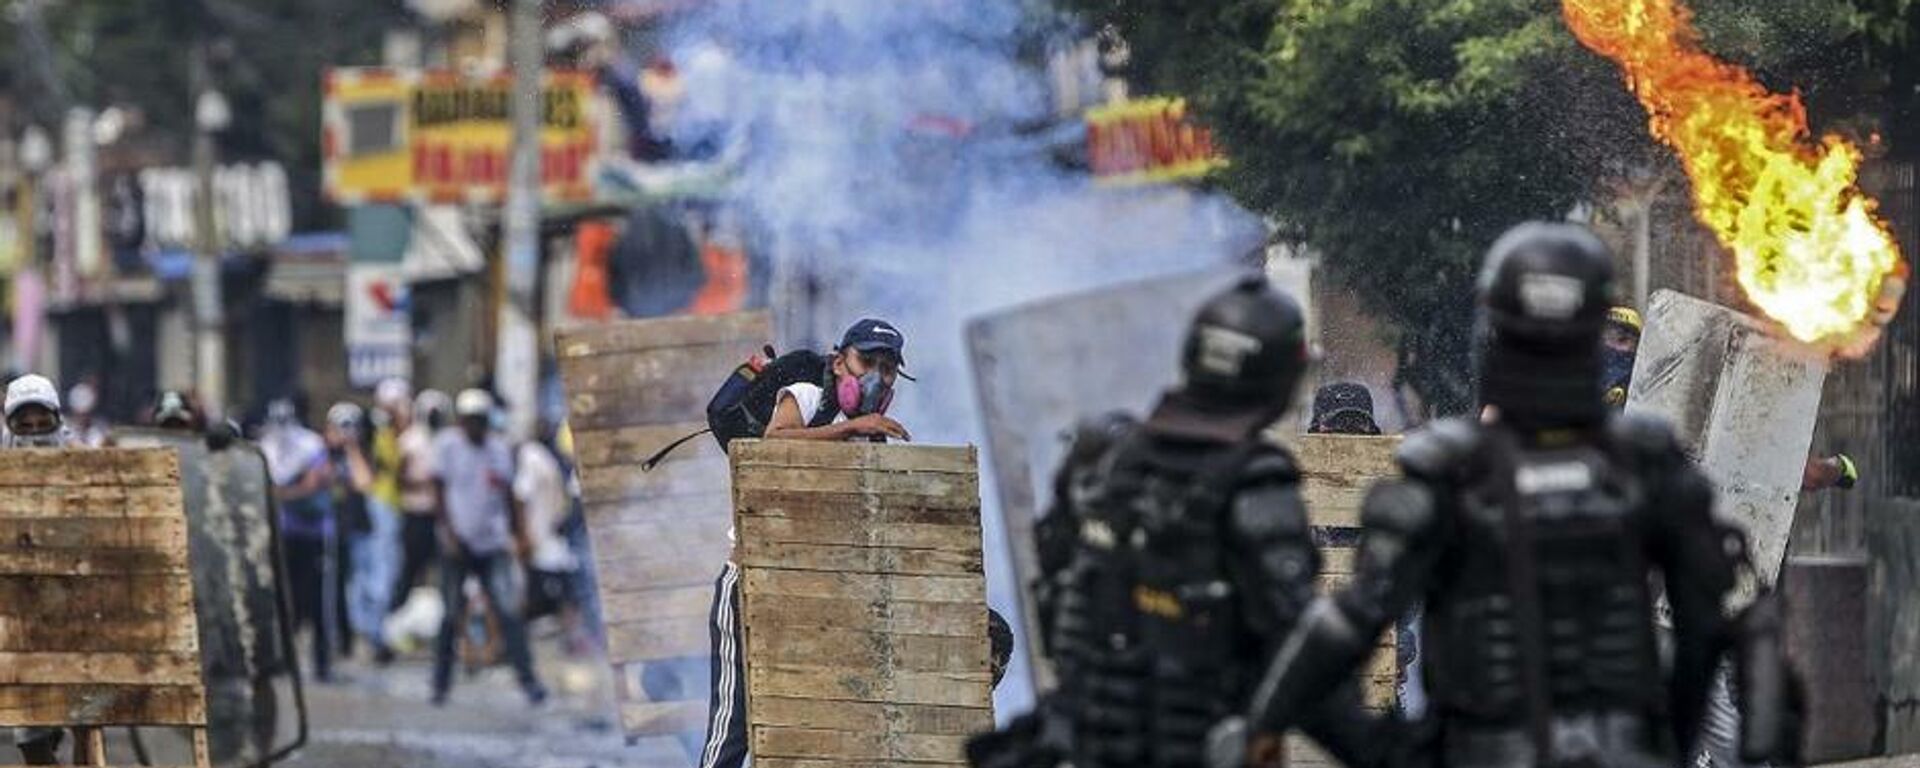 Disturbios contra la reforma tributaria en Cali (Colombia), el 29 de abril del 2021 - Sputnik Mundo, 1920, 04.05.2021